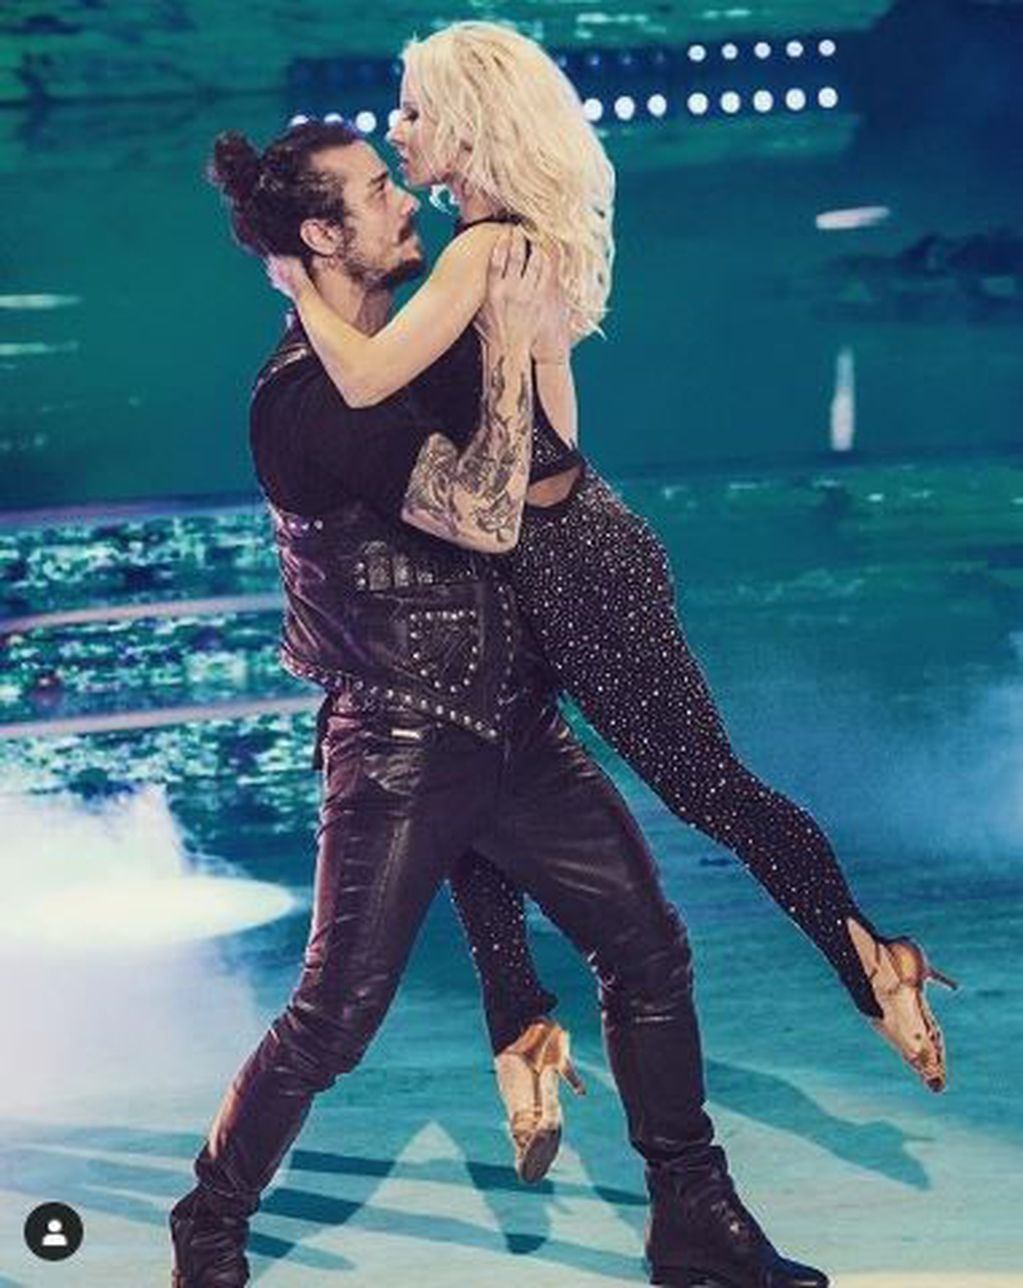 Daniel Osvaldo fue convocado para participar del Bailando por un Sueño de Italia,  junto a la bailarina Veera Kinnunen (Foto: Instagram Daniel Osvaldo)